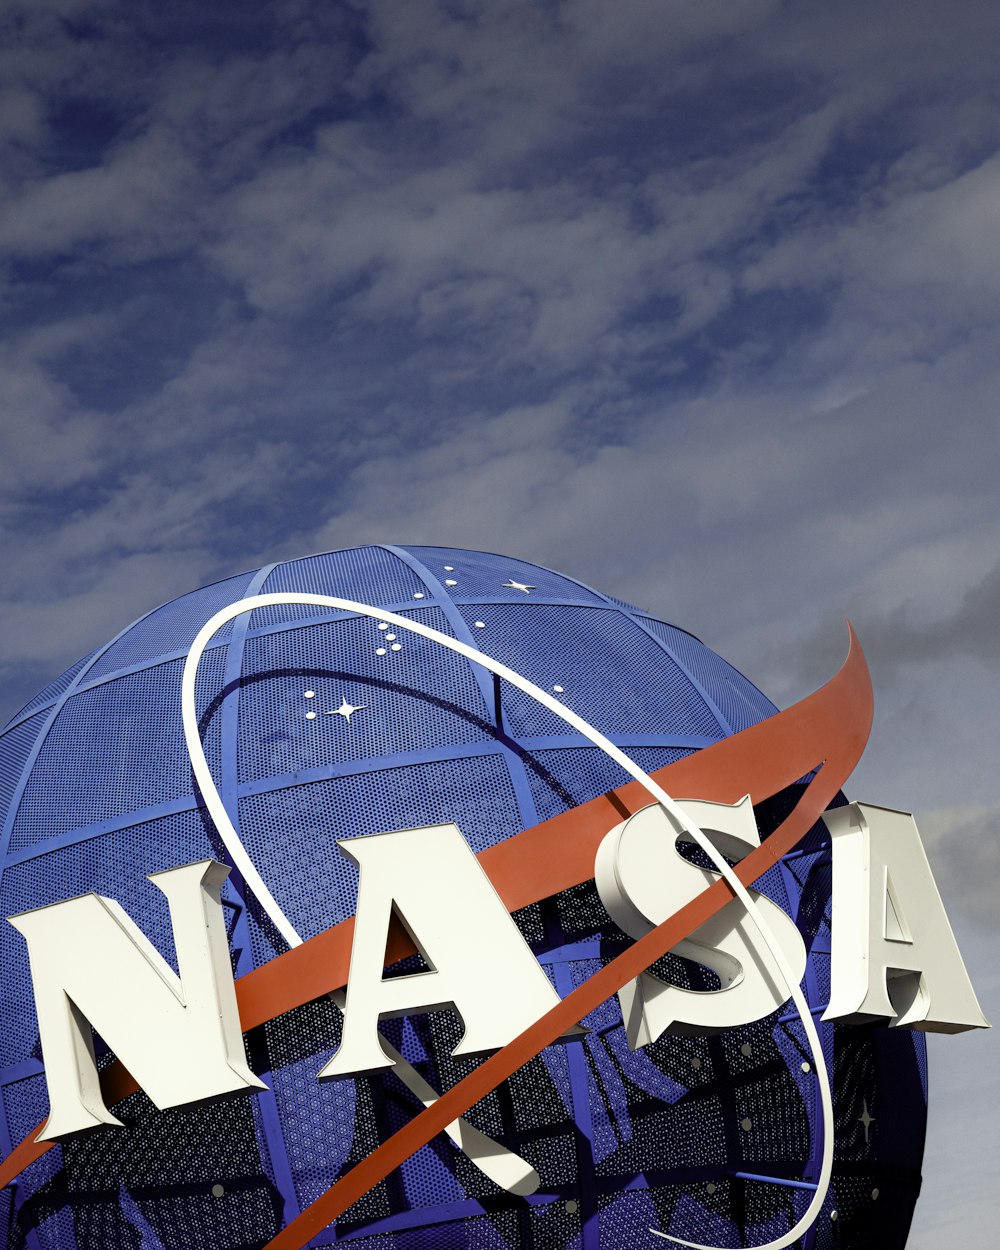 青い空を背景にNASAの看板が映し出される